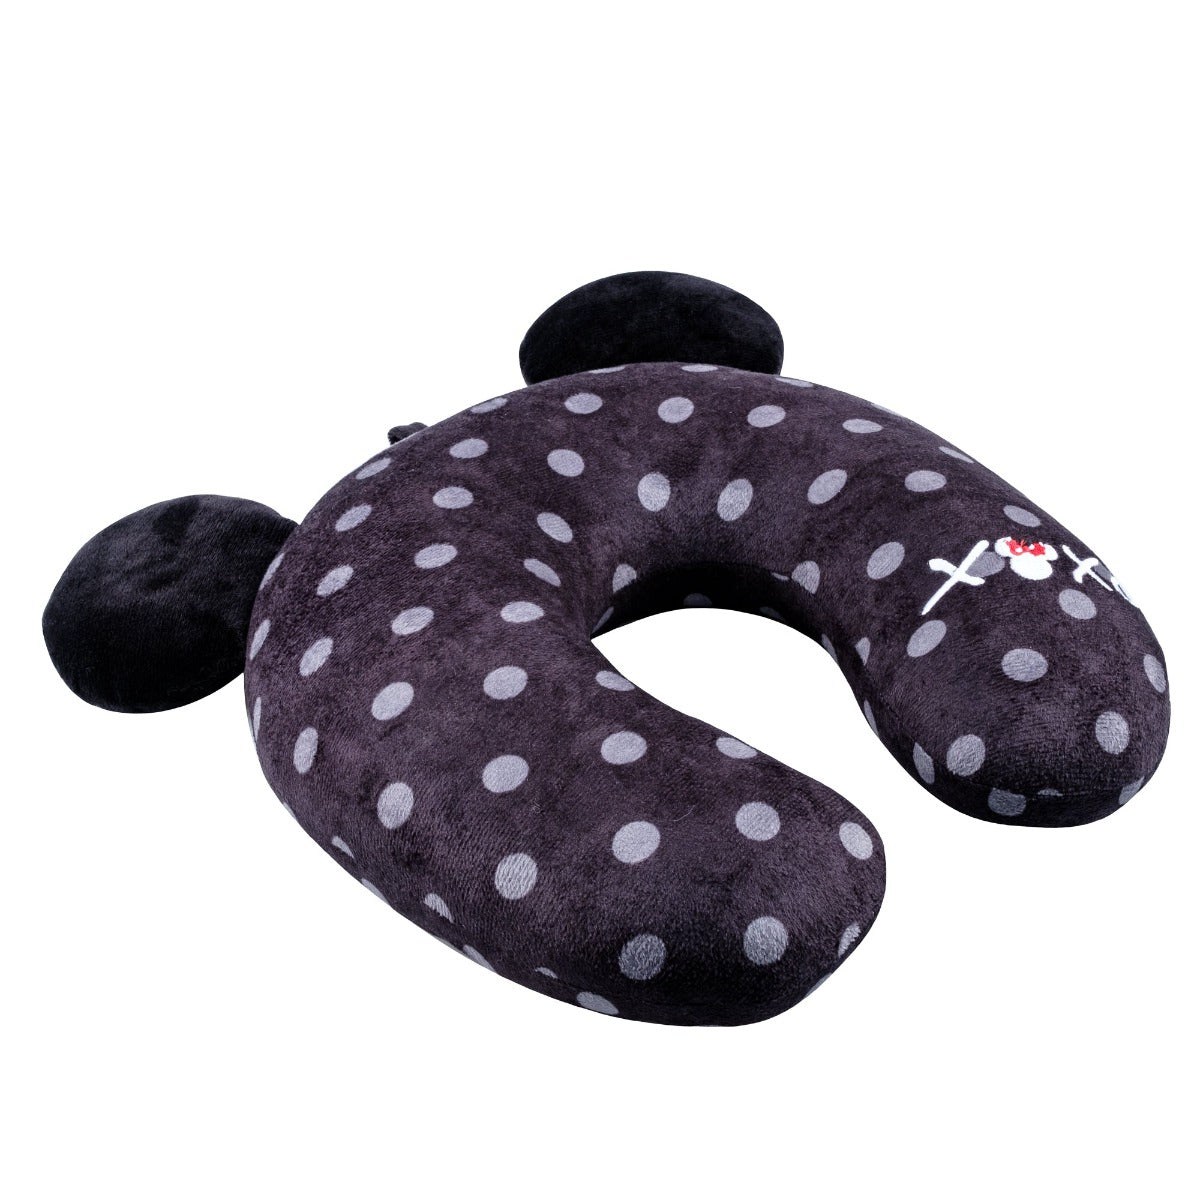 Disney Minnie Mouse Fūl XOXO travel neck pillow black white polka dot